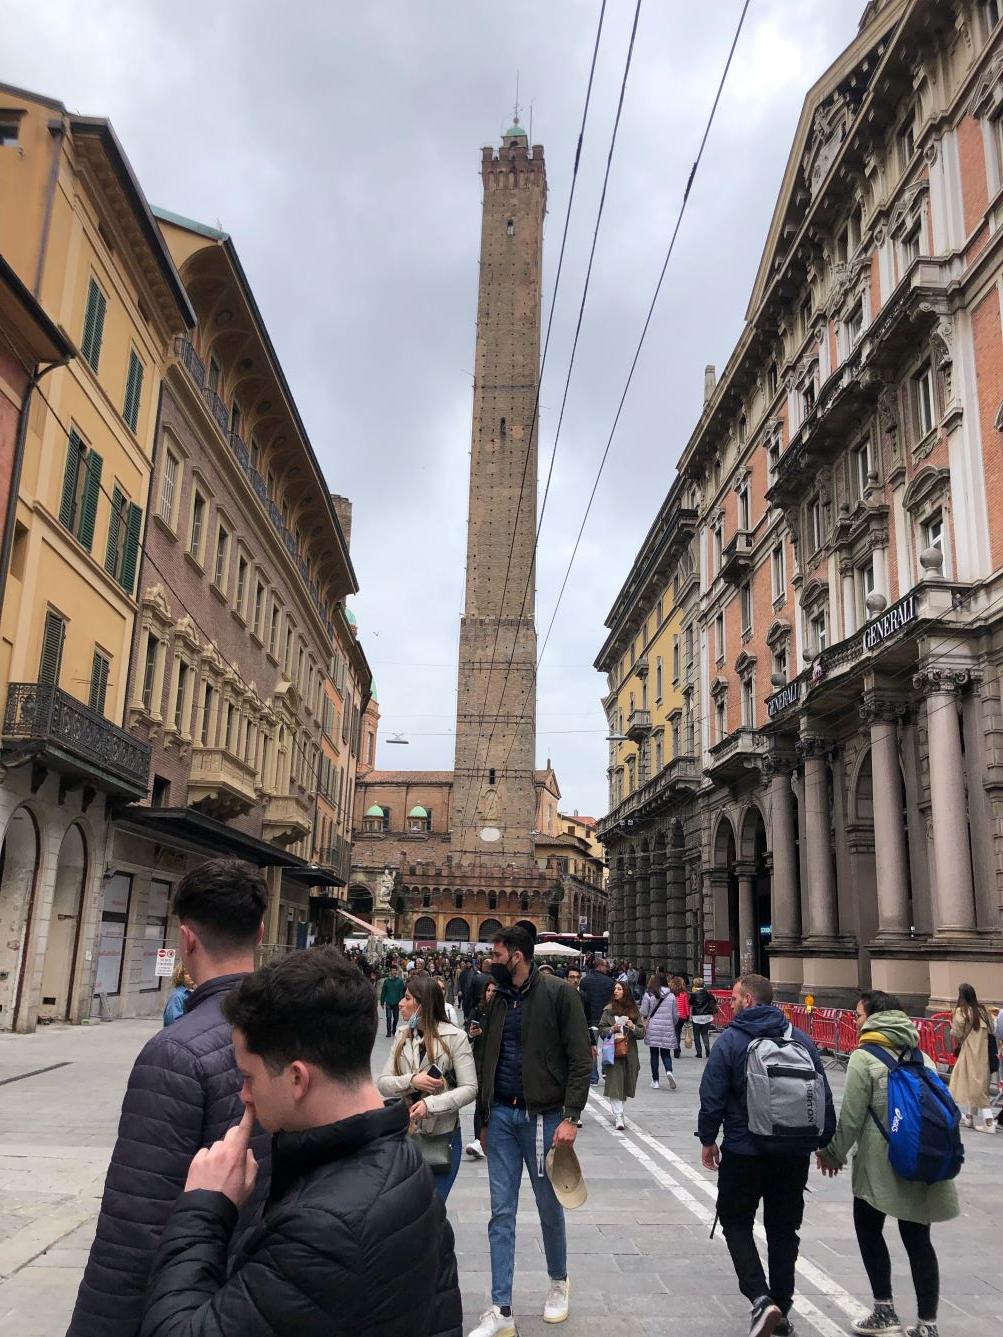 Bologna egy igazi egyetemváros, ahol, ha nem is minden sarkon, de legalábbis minden negyedben van egy-egy a diákoknak fenntartott, megfizethető szálláshely, úgynevezett kollégium.